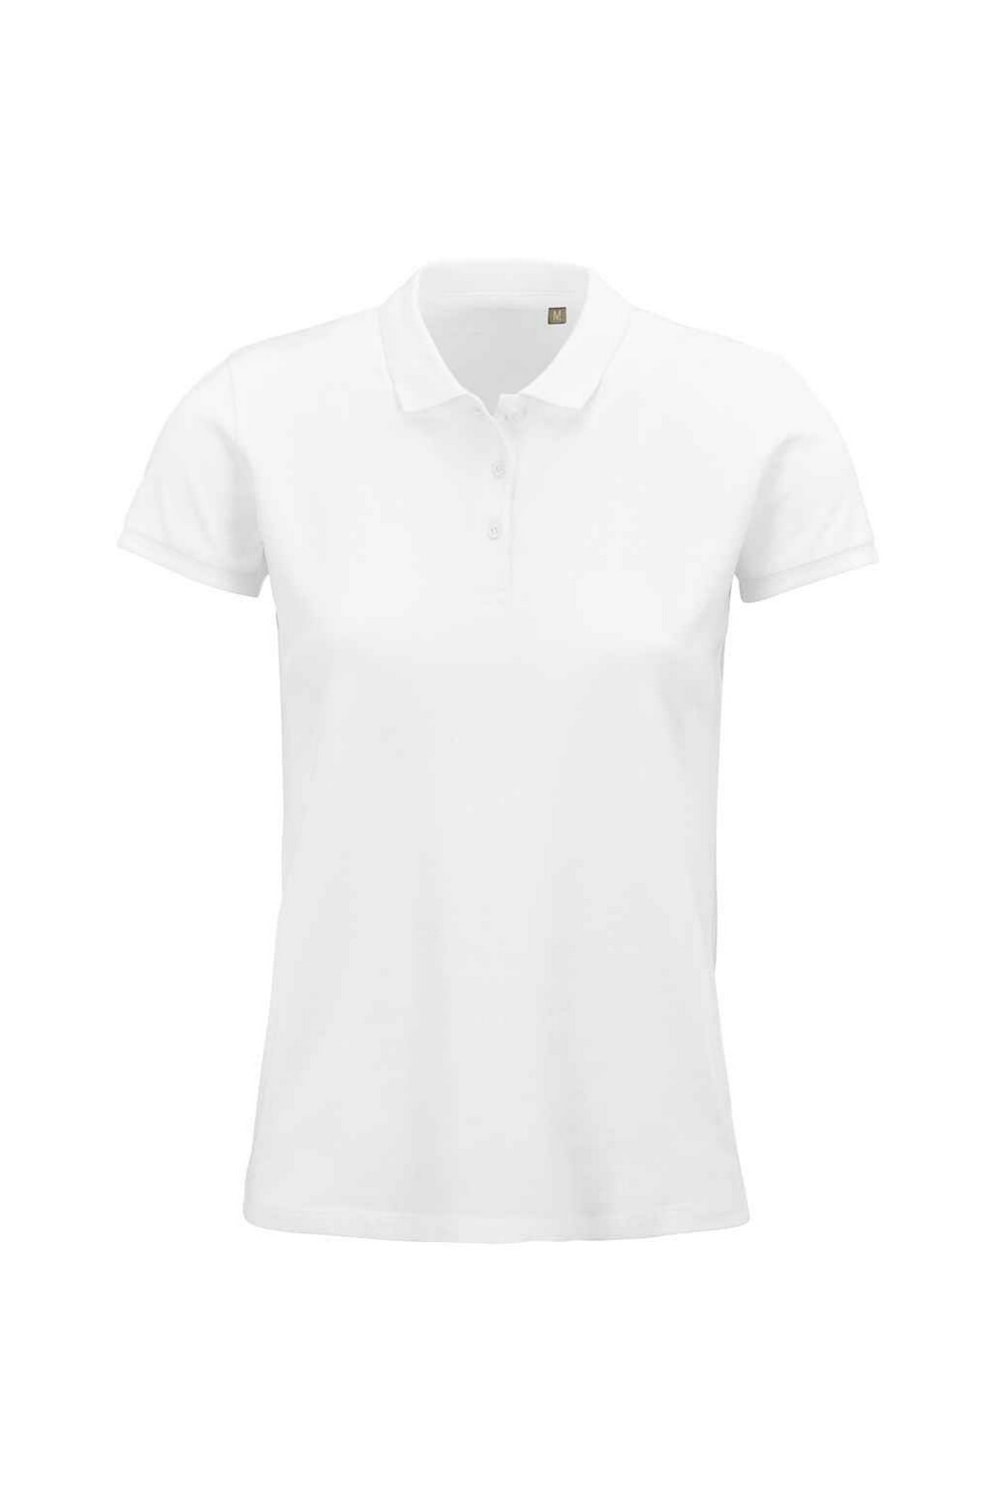 SOLS Womens/Ladies Planet Organic Polo Shirt